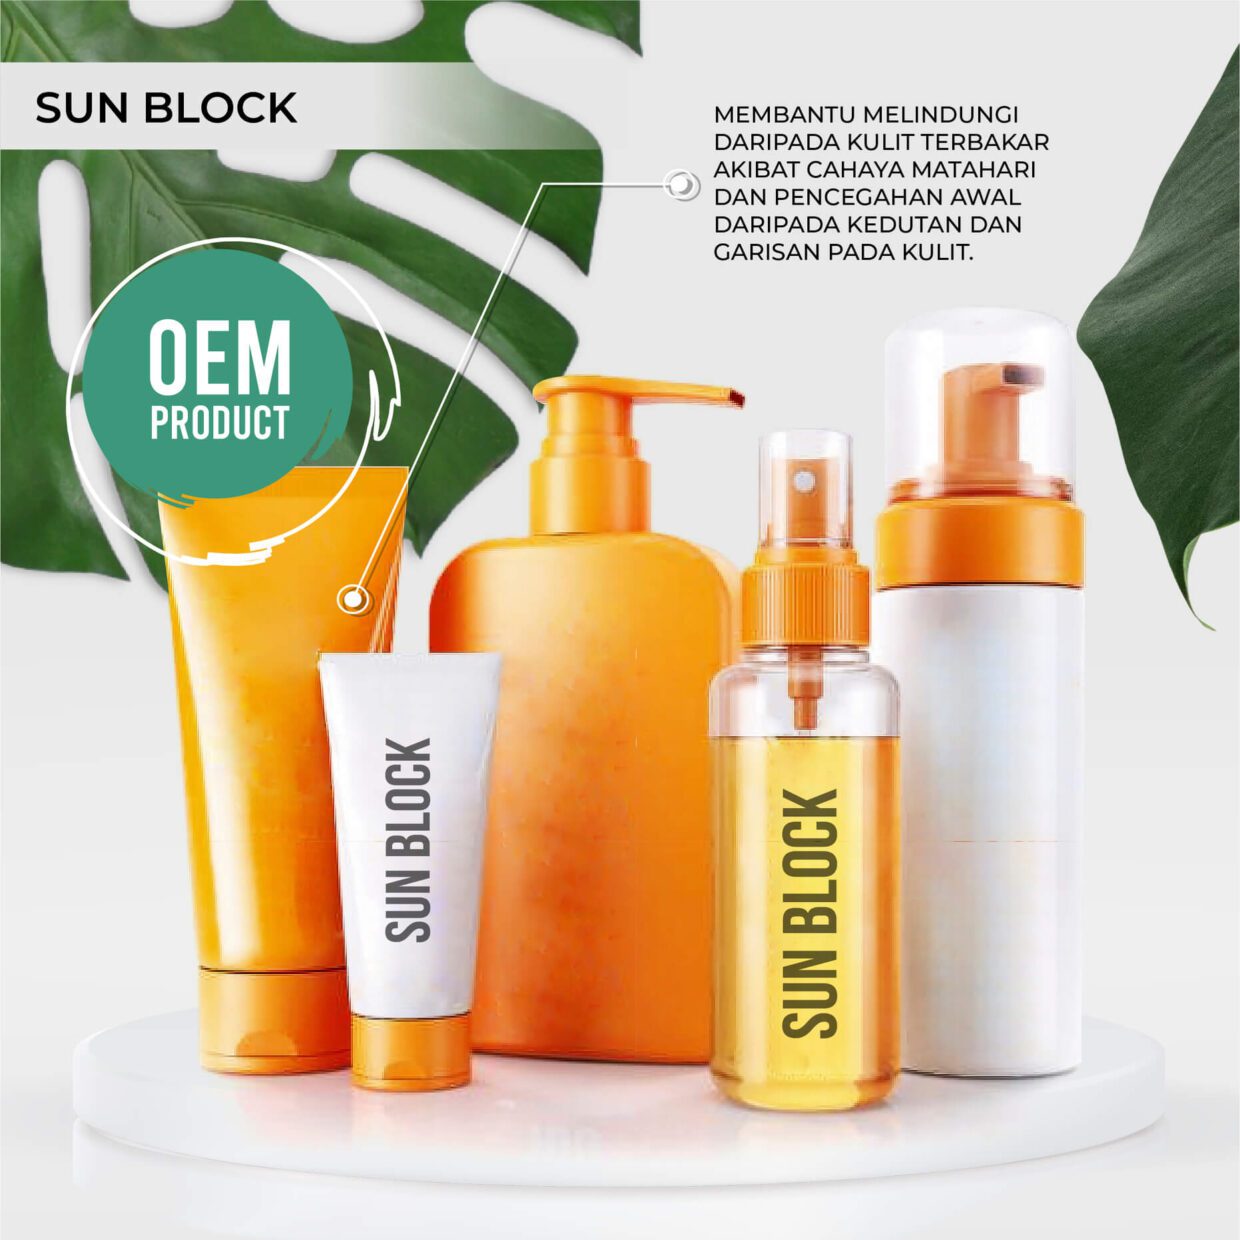 sun block - produk jenama sendiri